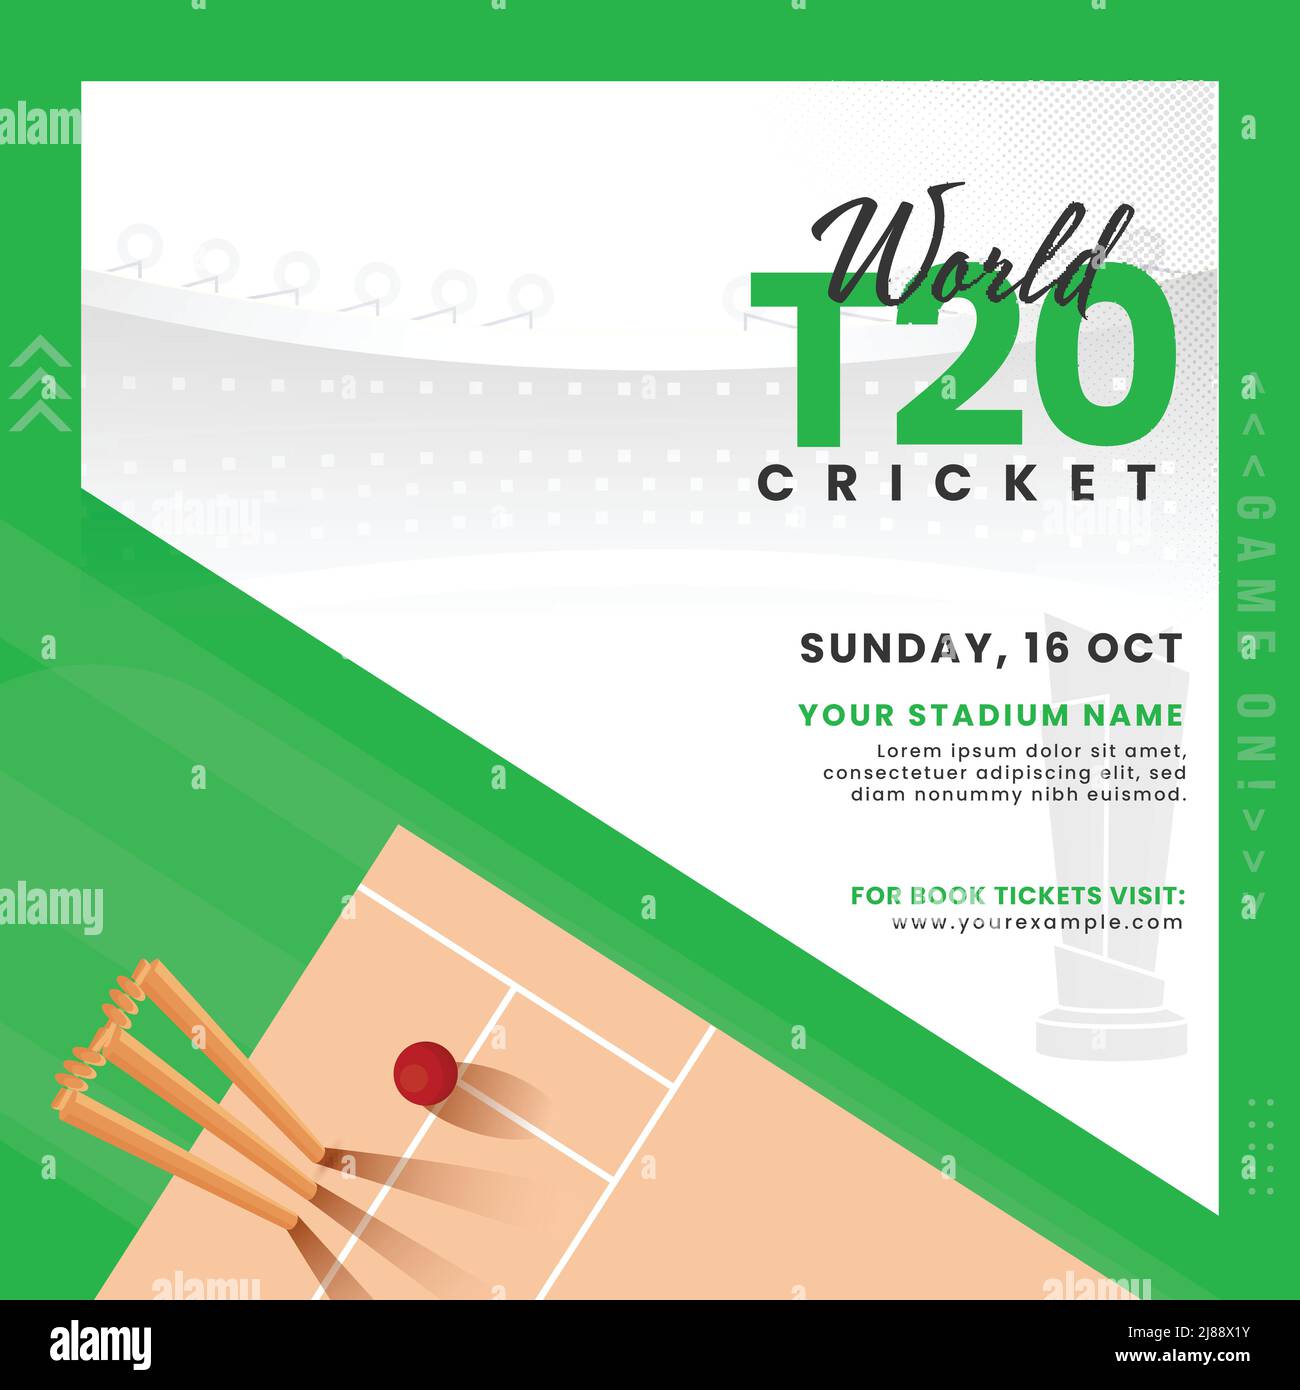 World T20 Cricket Match Poster oder Template Design mit Draufsicht auf Spielplatz auf weißem und grünem Hintergrund. Stock Vektor